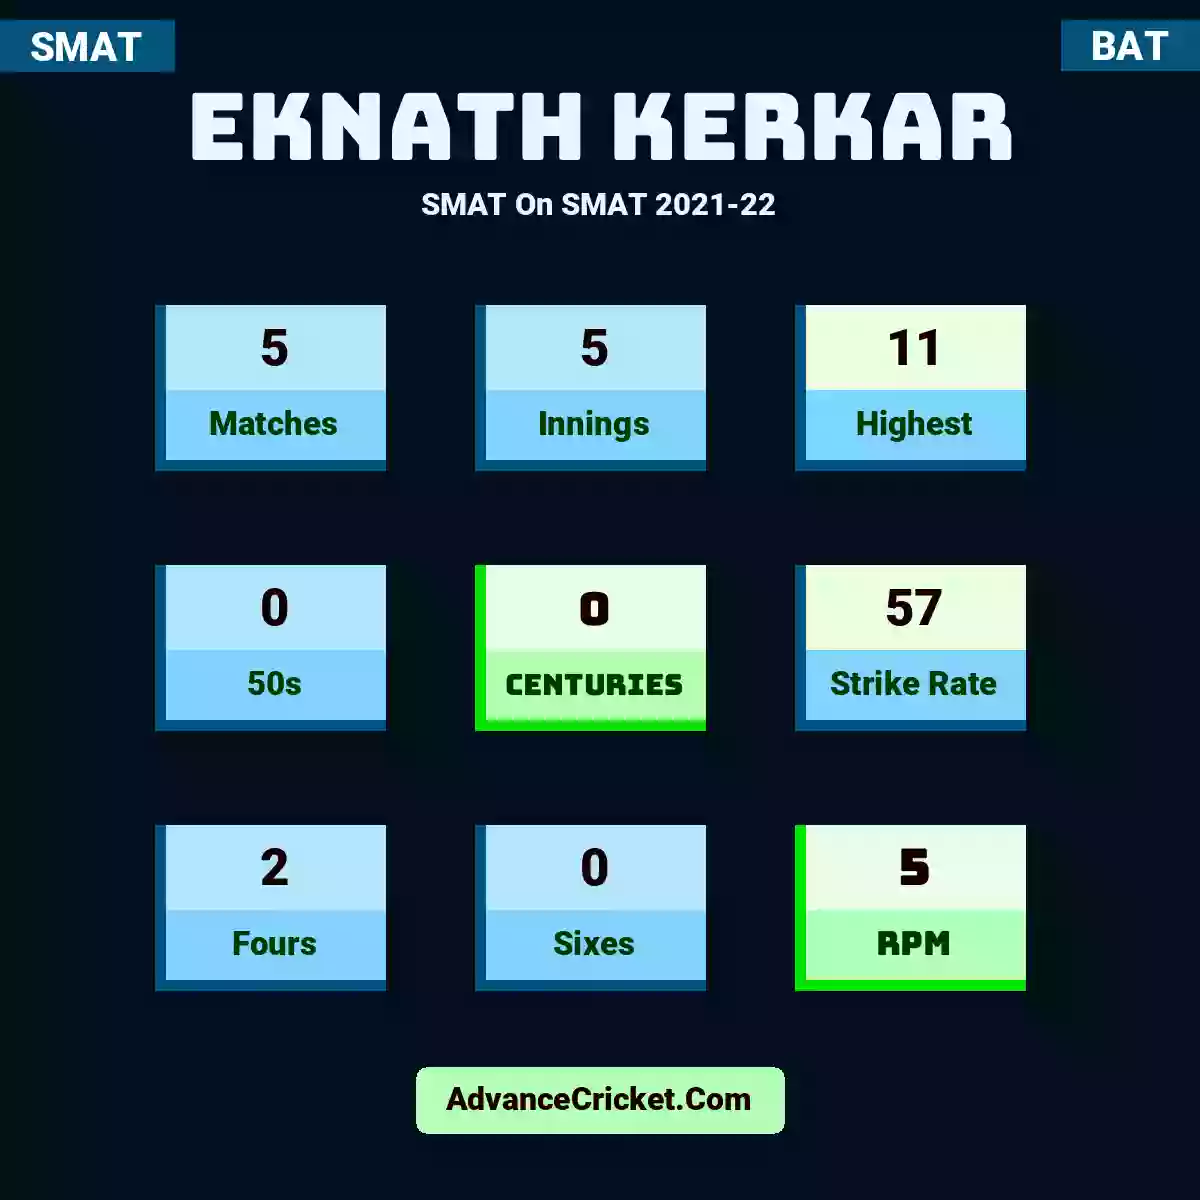 Eknath Kerkar SMAT  On SMAT 2021-22, Eknath Kerkar played 5 matches, scored 11 runs as highest, 0 half-centuries, and 0 centuries, with a strike rate of 57. E.Kerkar hit 2 fours and 0 sixes, with an RPM of 5.